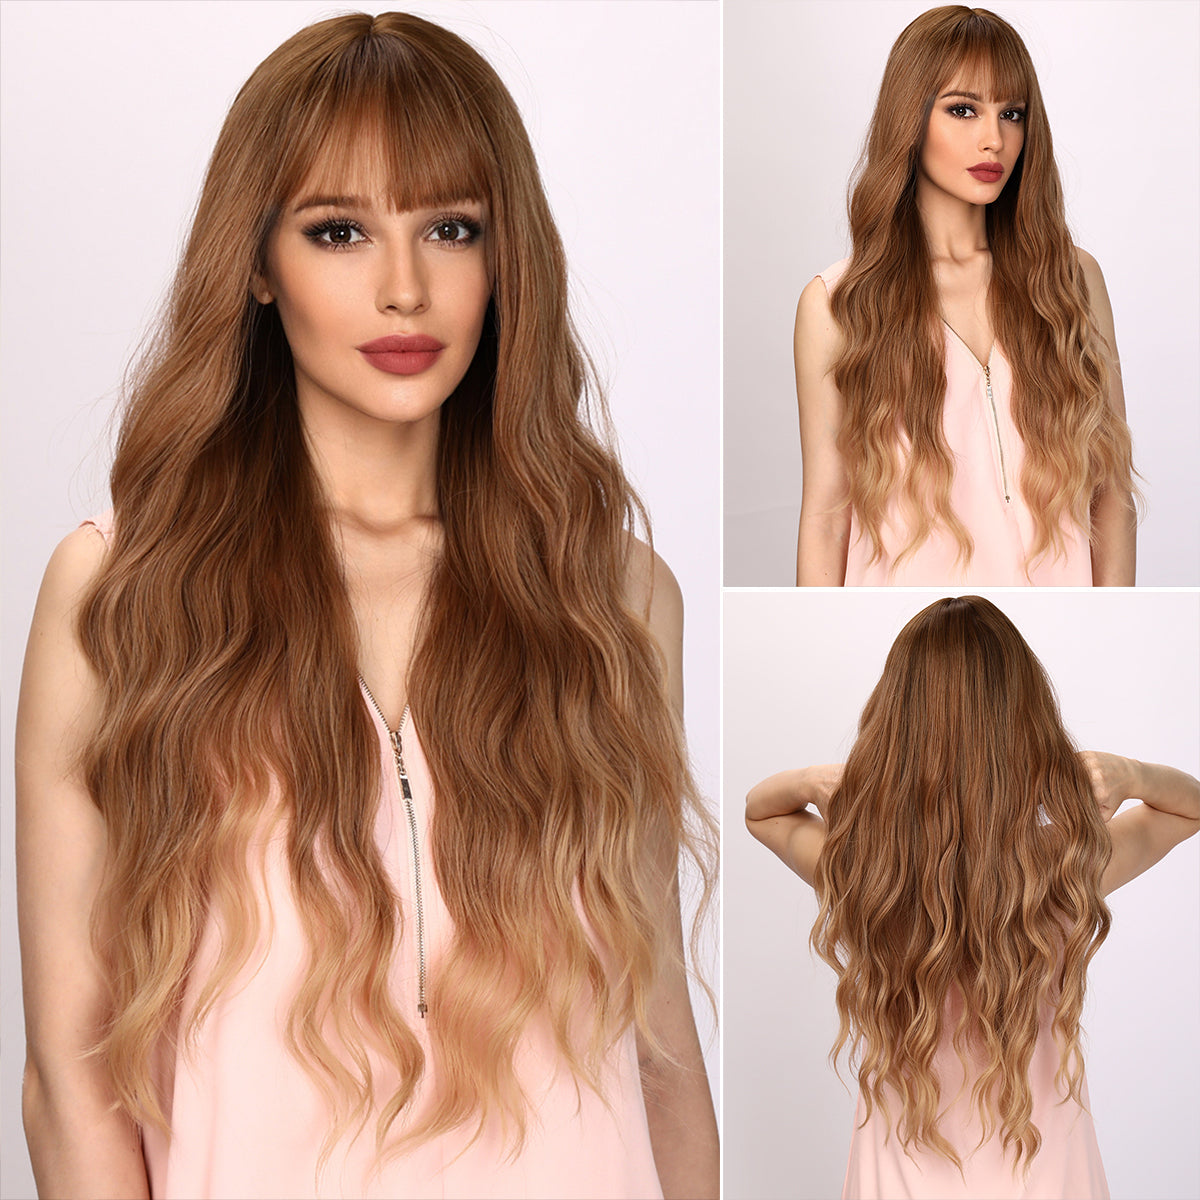 Zuri | Blonde and Orange Gradient Wig | Body Wave Wig | Curly Wig | 30 inch Wig | TM Pop